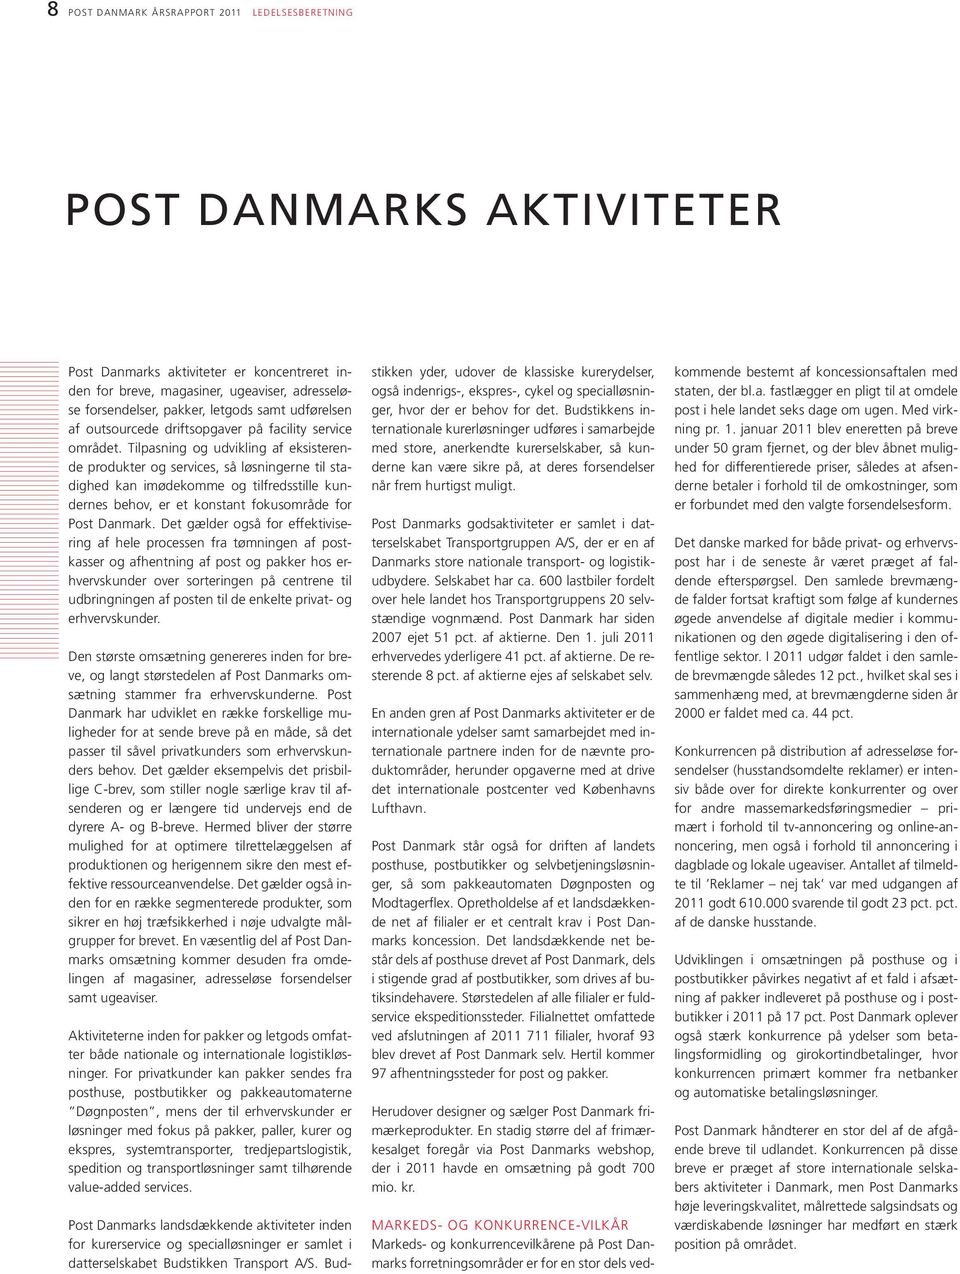 Tilpasning og udvikling af eksisterende produkter og services, så løsningerne til stadighed kan imødekomme og tilfredsstille kundernes behov, er et konstant fokusområde for Post Danmark.